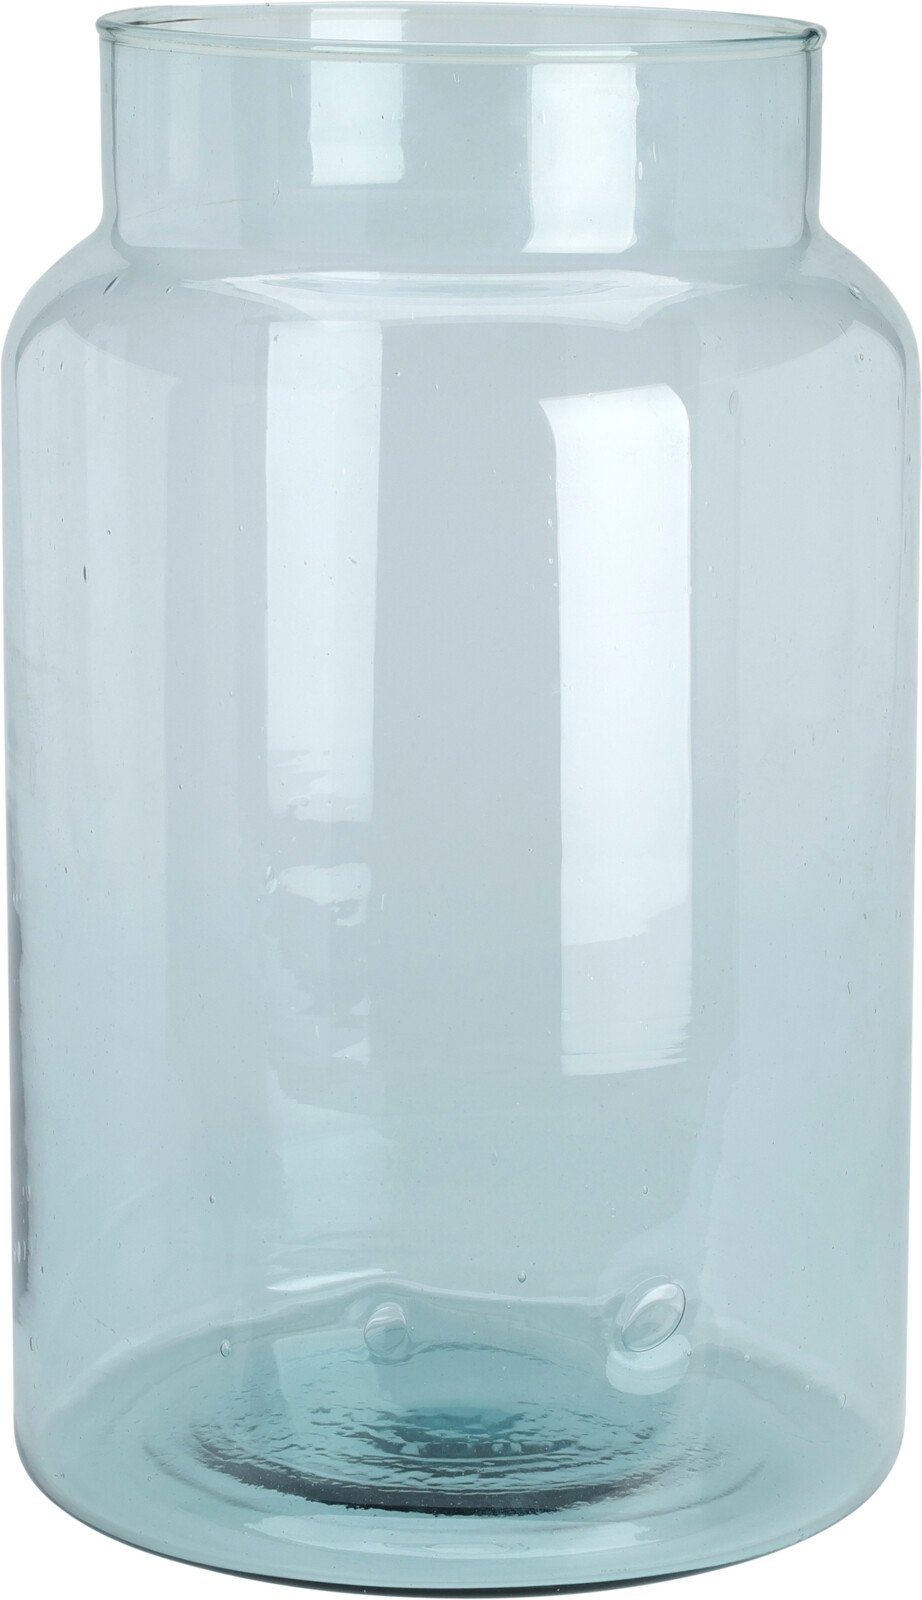 Stiklinė vaza, perdirbto stiklo, šviesiai mėlynos sp., 21 x 35 cm